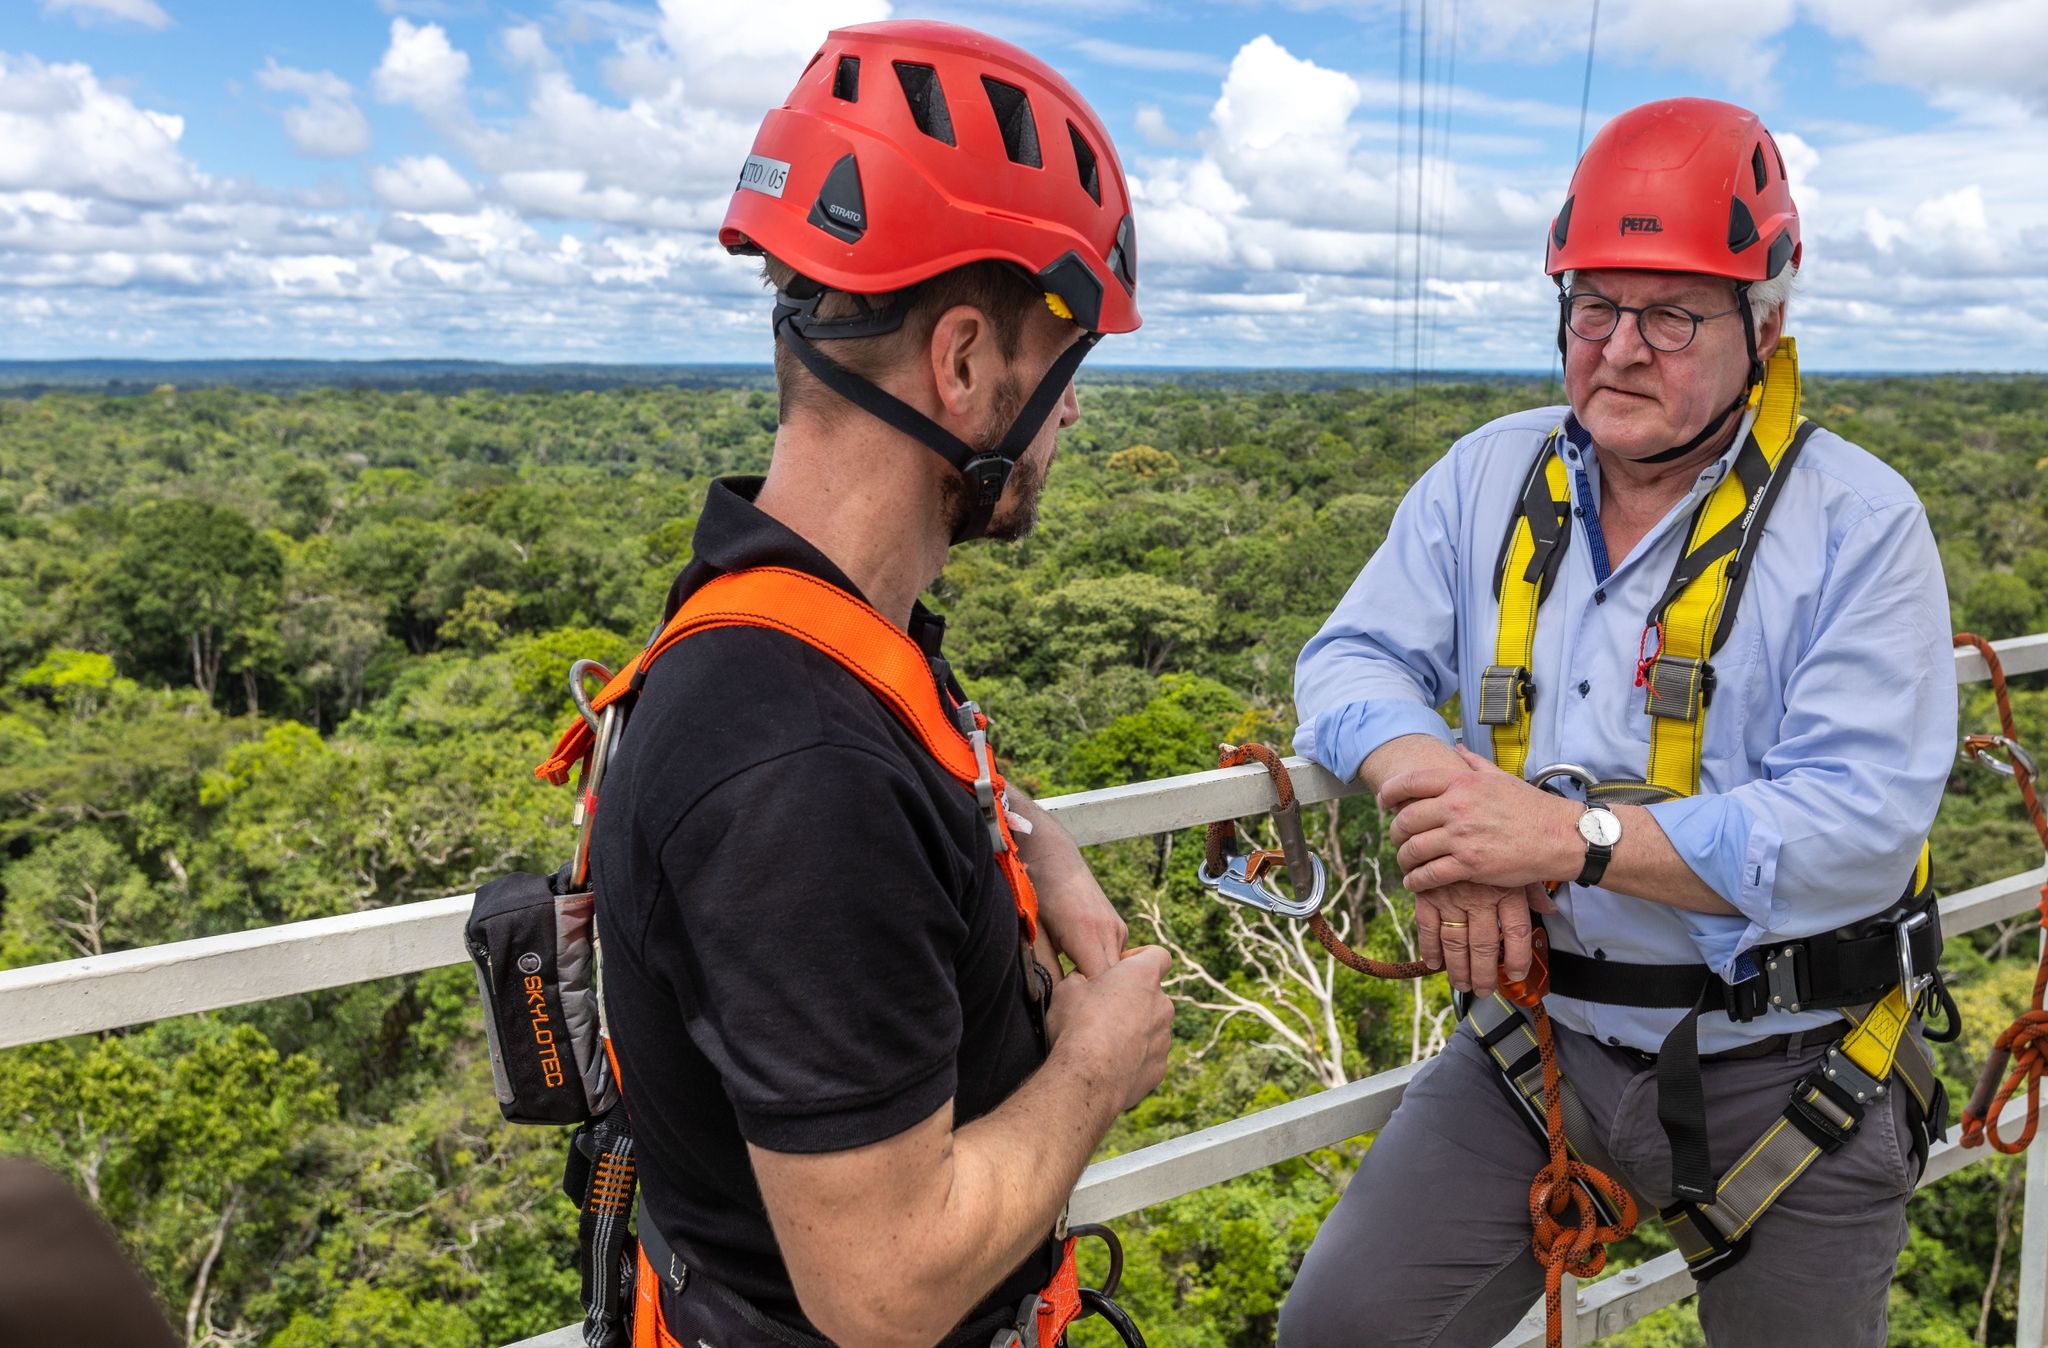 Bundespräsident Frank-Walter Steinmeier mit Stefan Wolff, Repräsentant des ATTO-Projekts vom Max-Planck-Institut, auf einer Plattform des Amazon Tall Tower Observatory (ATTO).